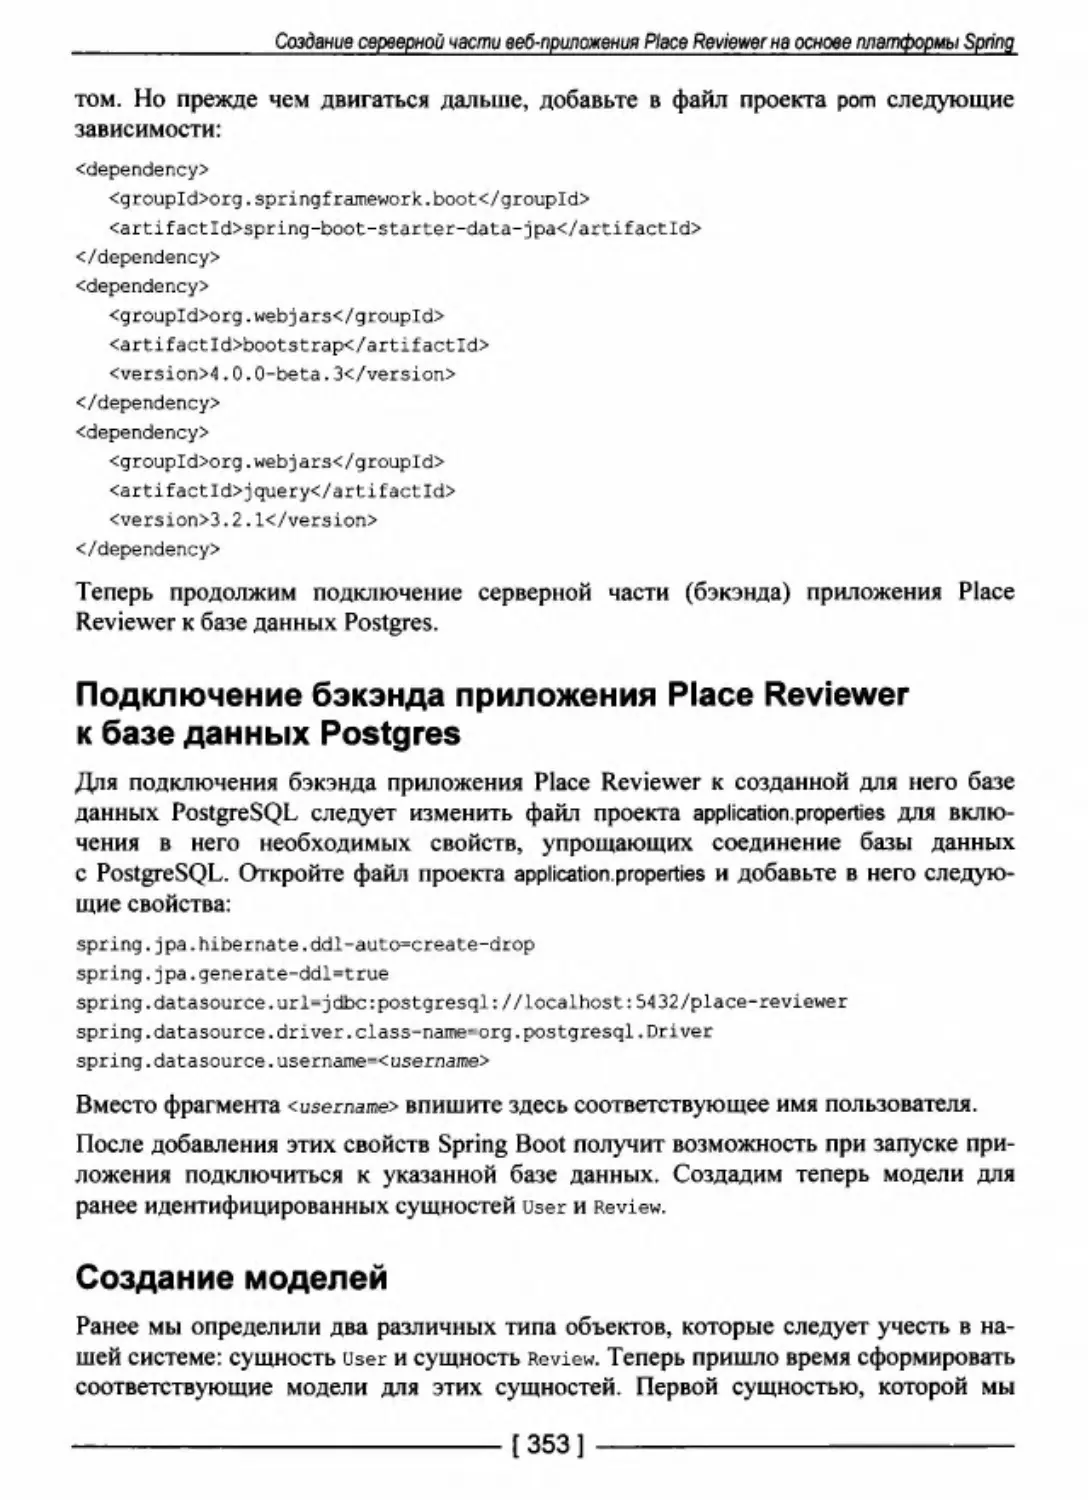 Подключение бэкэнда приложения Place Reviewer к базе данных Postgres
Создание моделей